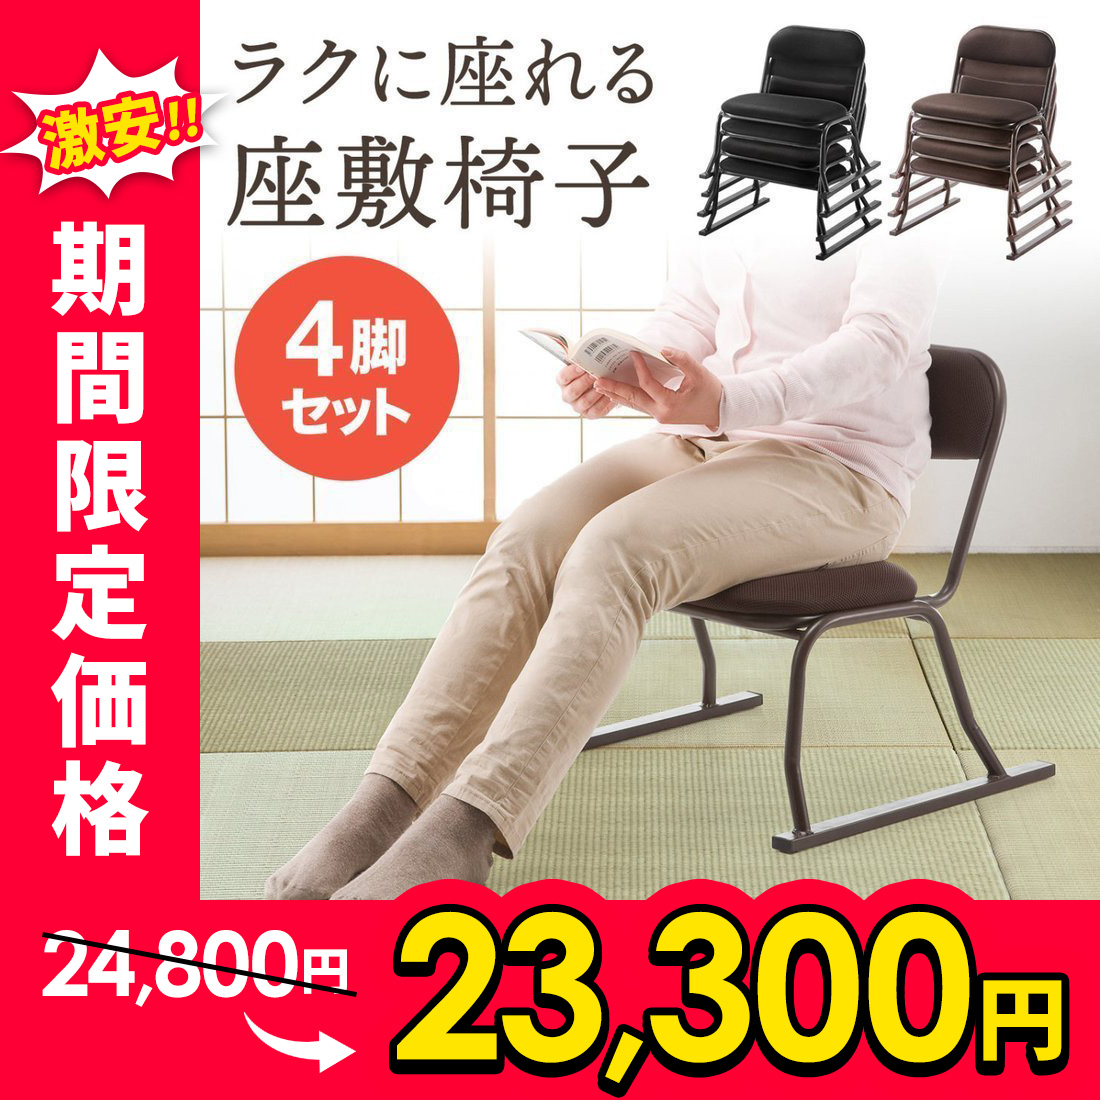 ブラック・ 座椅子 回転式 座敷椅子 楽座椅子(4脚セット)積